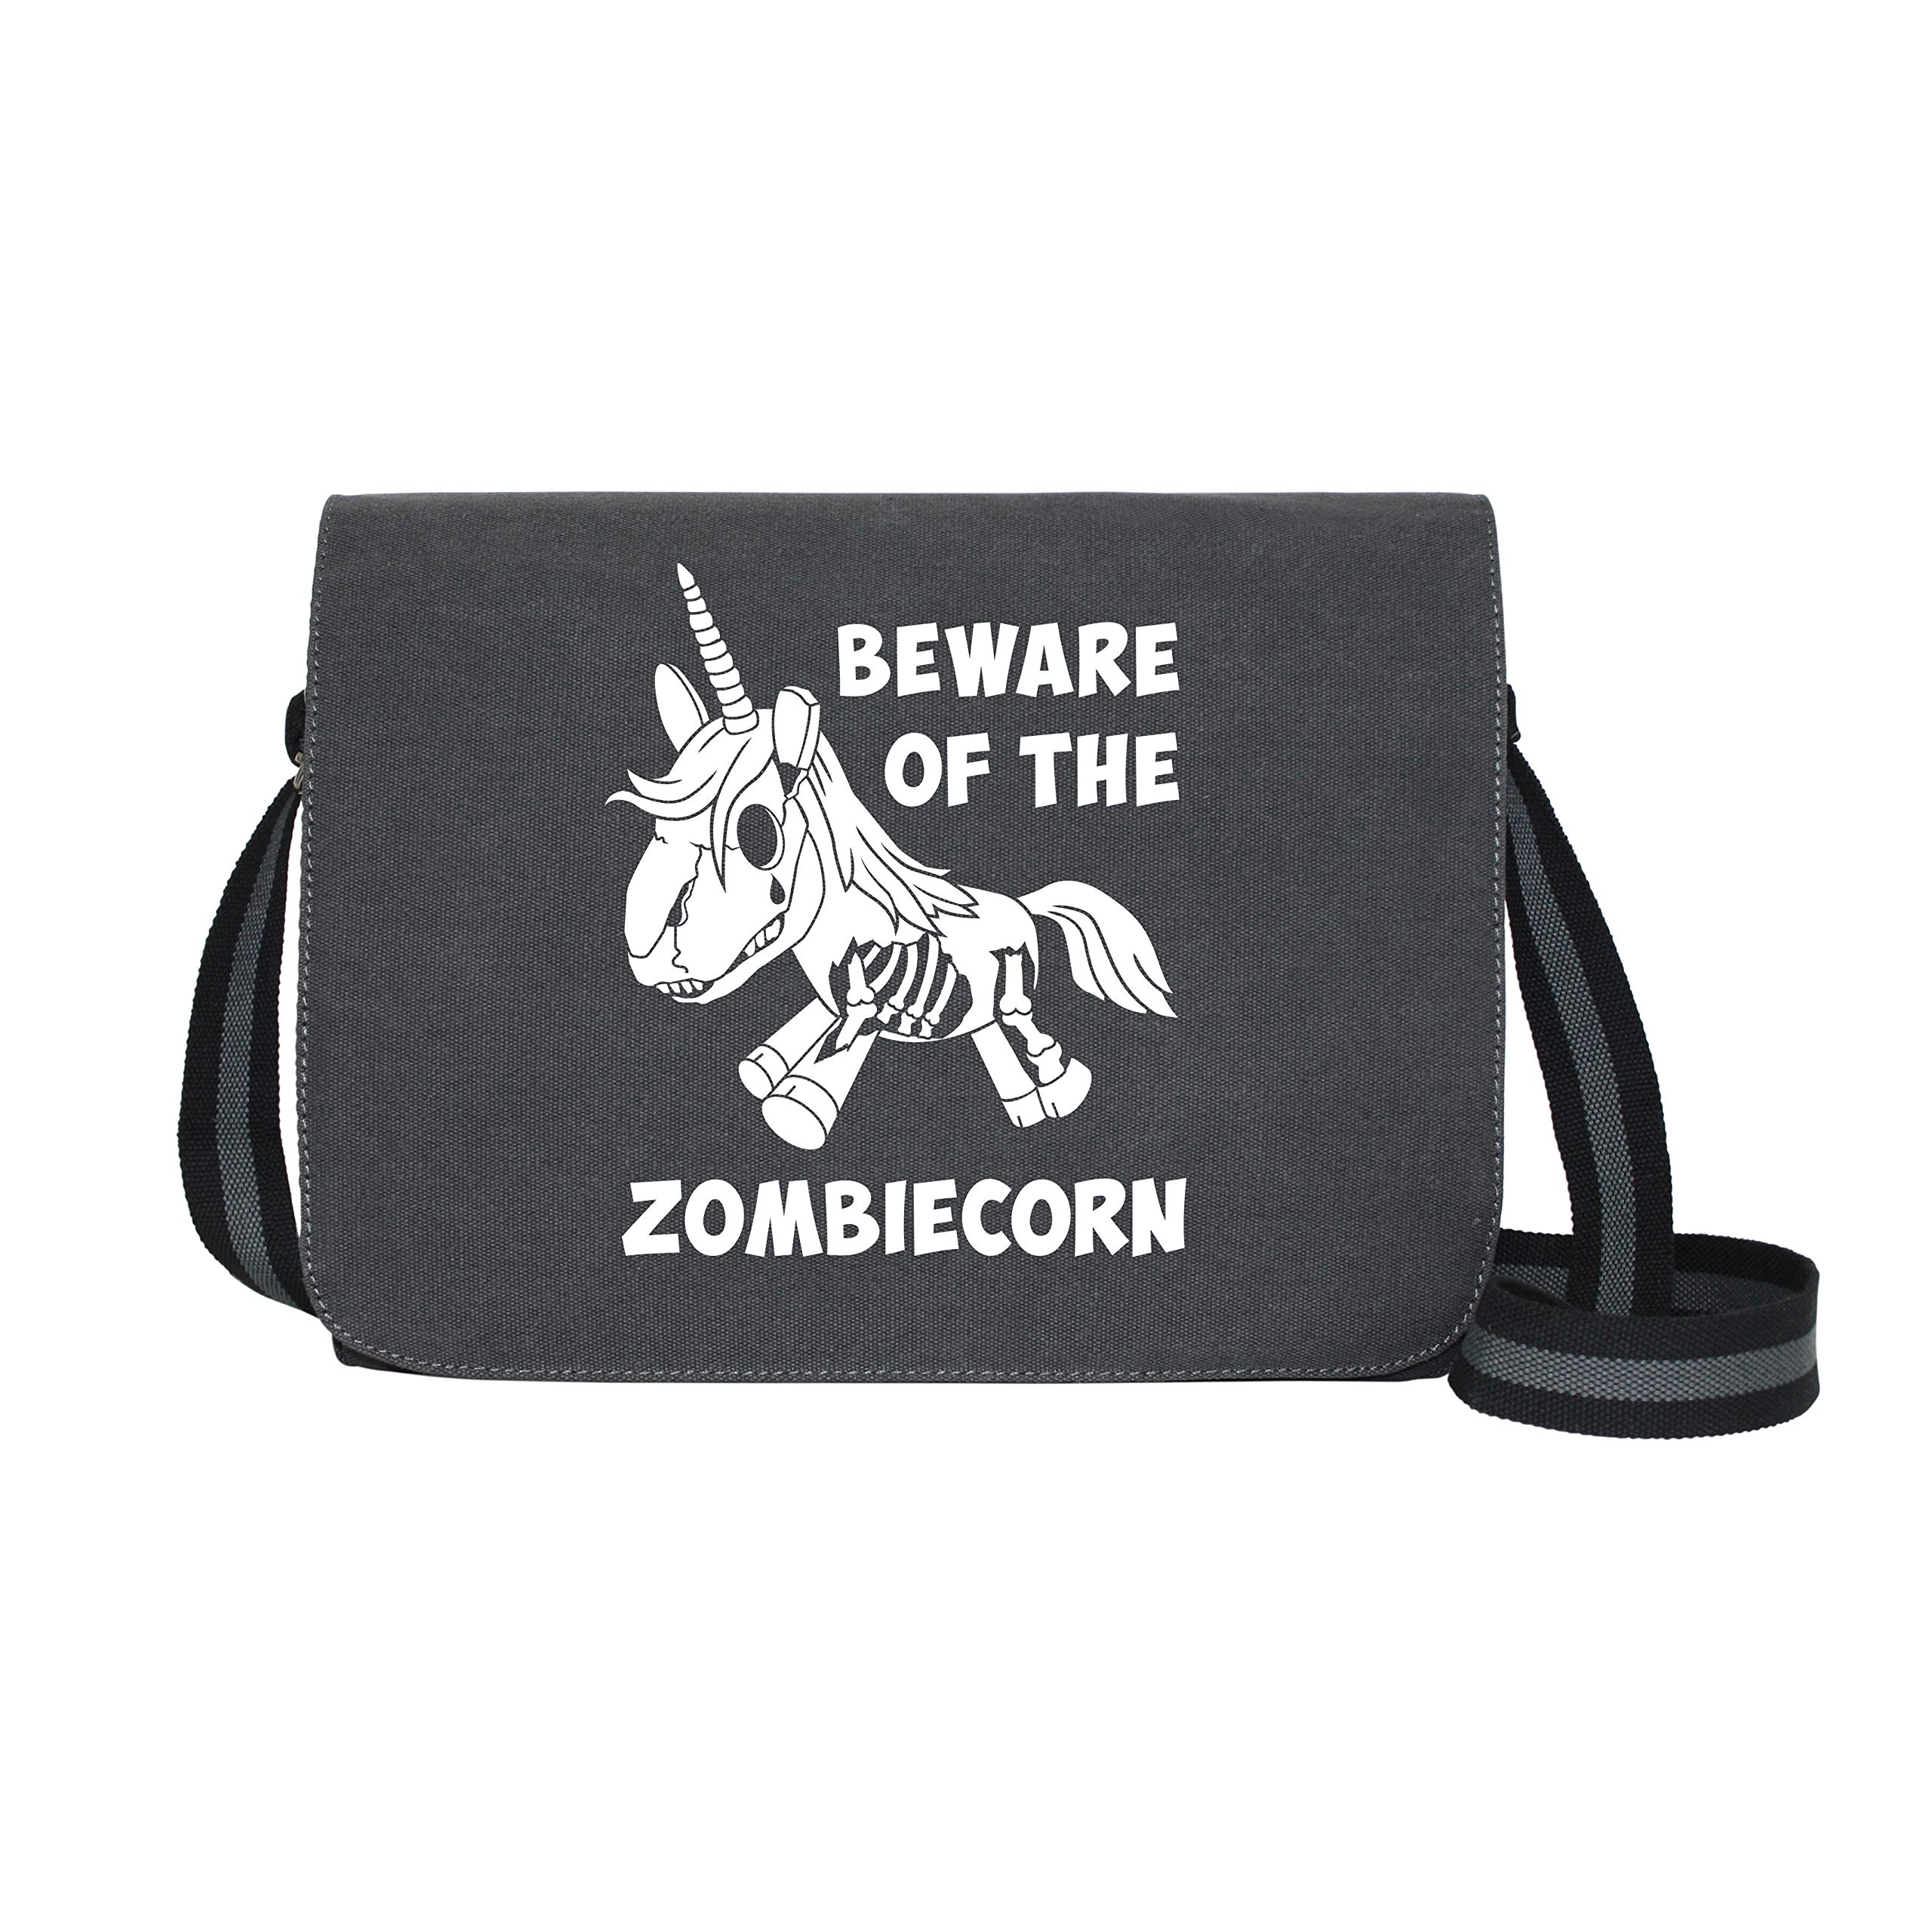 getDigital Beware of the Zombiecorn - Umhängetasche Messenger Bag für Geeks und Nerds mit 5 Fächern - 15.6 Zoll, Schwarz Anthrazit